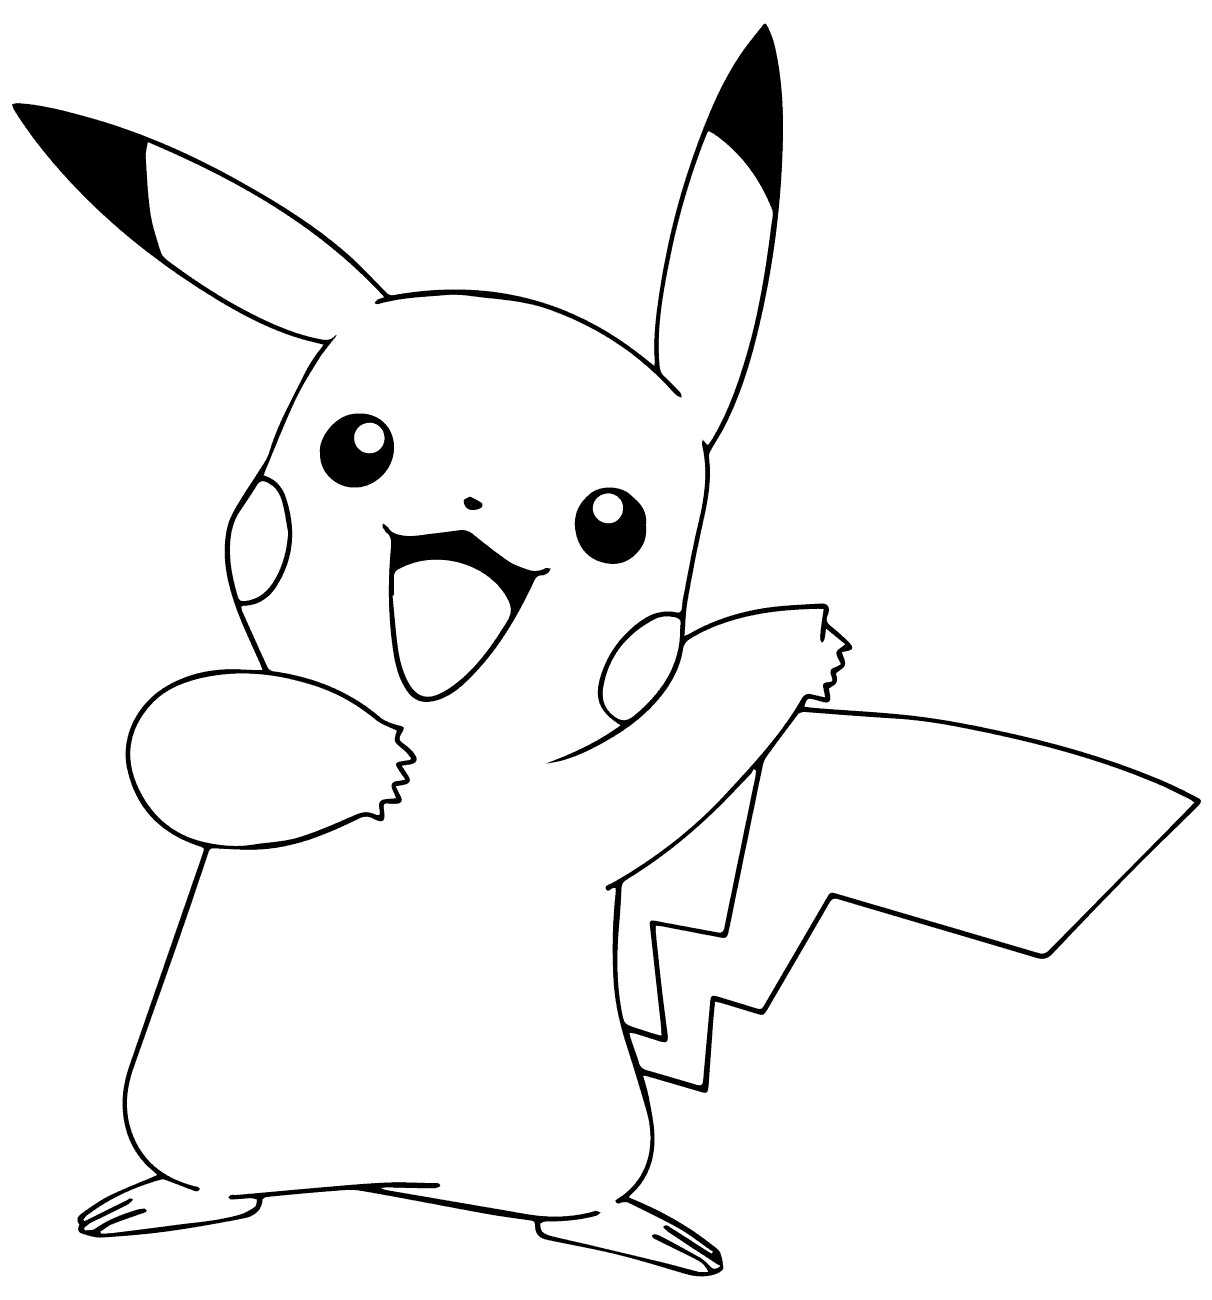 Xem hơn 100 ảnh về hình vẽ pikachu cute  daotaonec